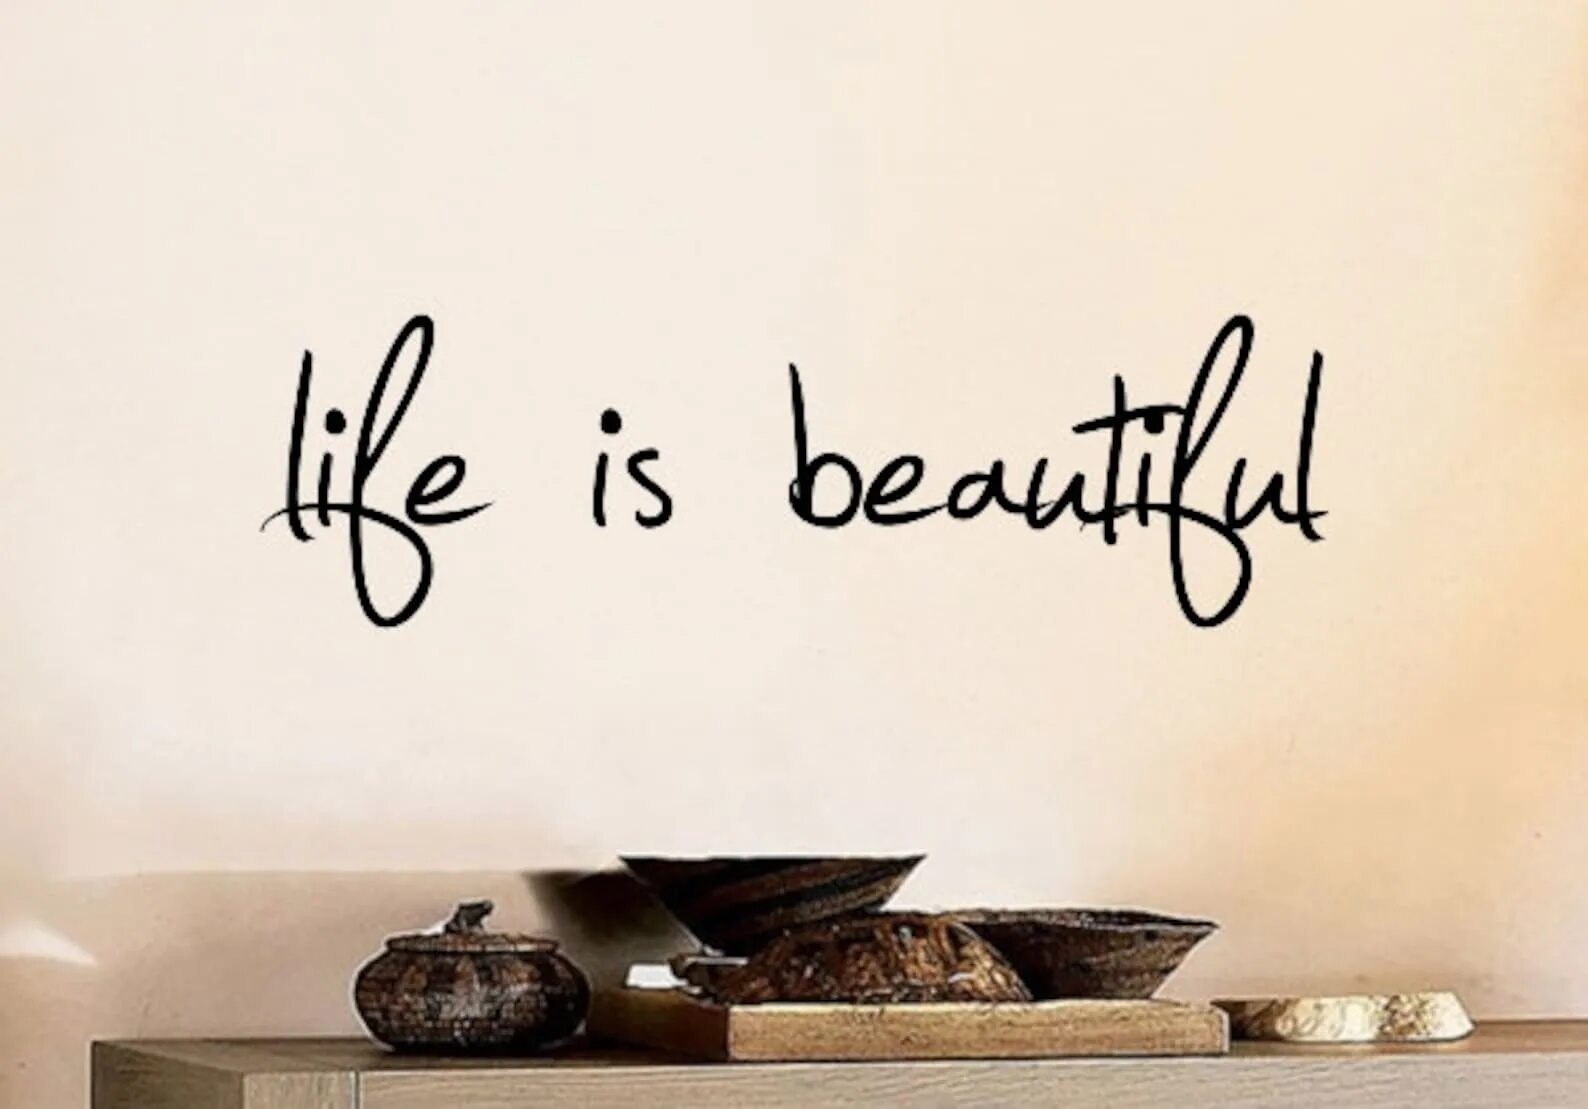 Life is life download. Life надпись. Жизнь прекрасна надпись. Life is beautiful надпись. Life is beautiful красивая надпись.